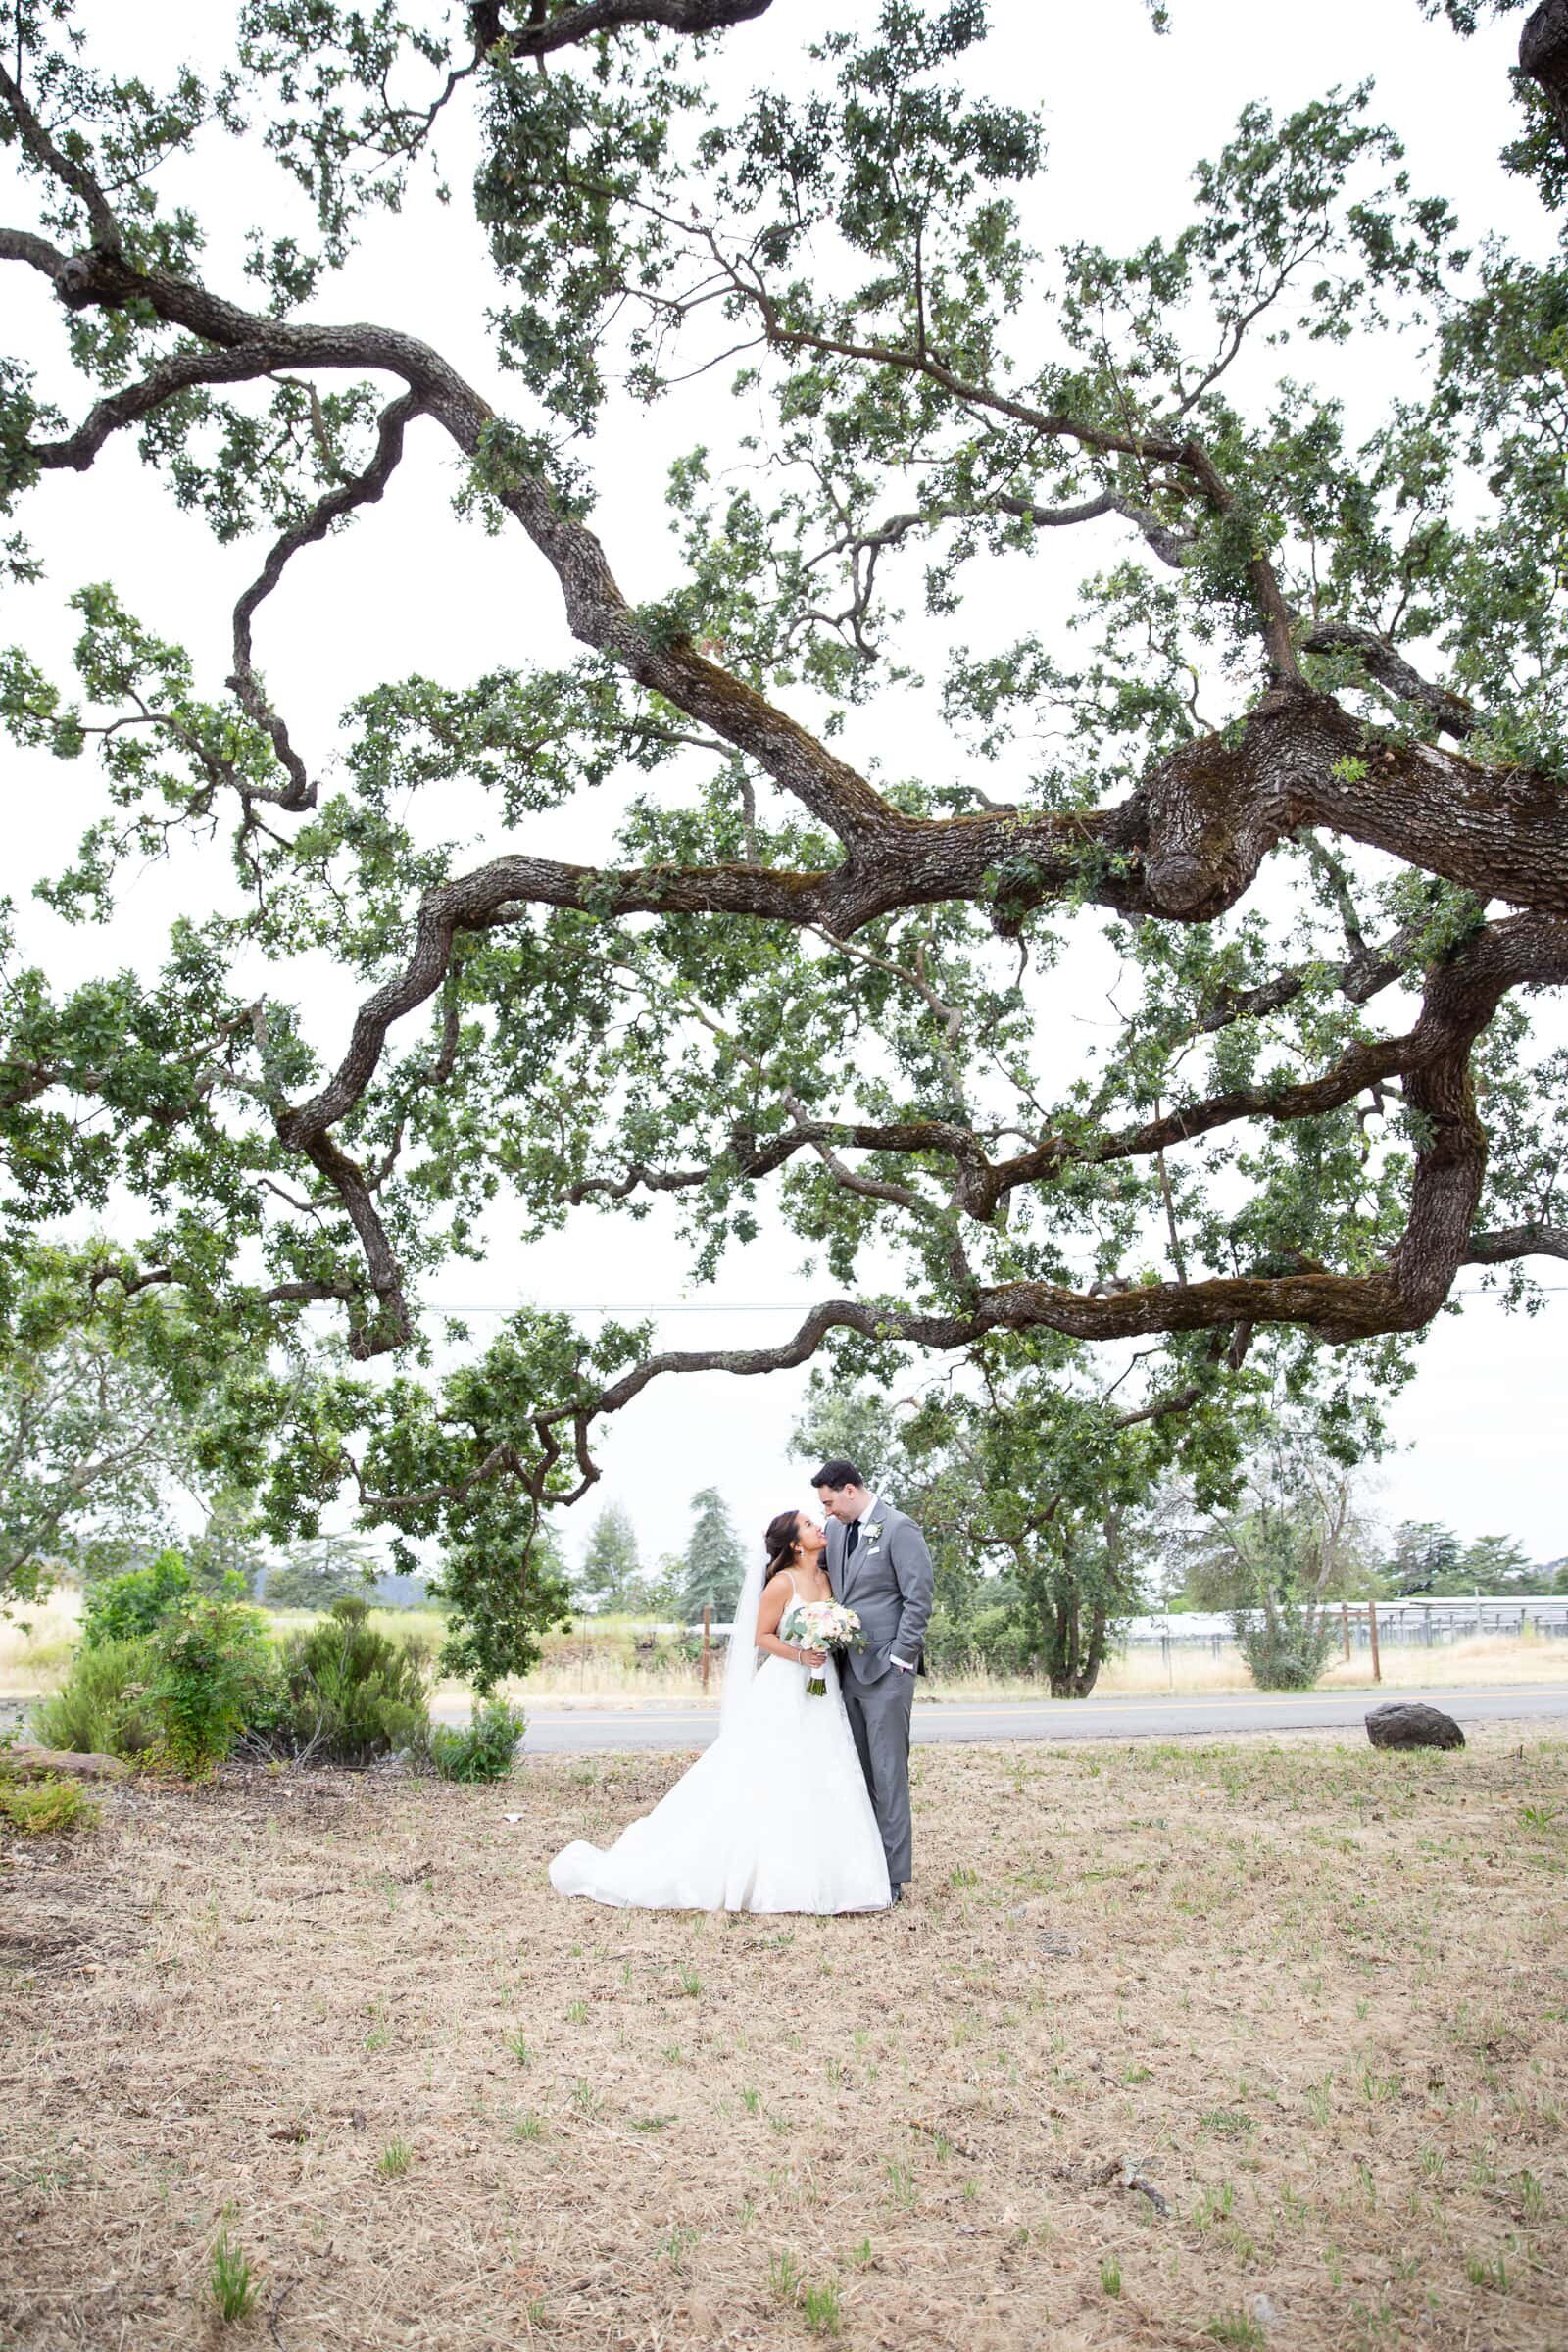 Wedding Portrait under an oak tree by Raleigh elopement photographer.